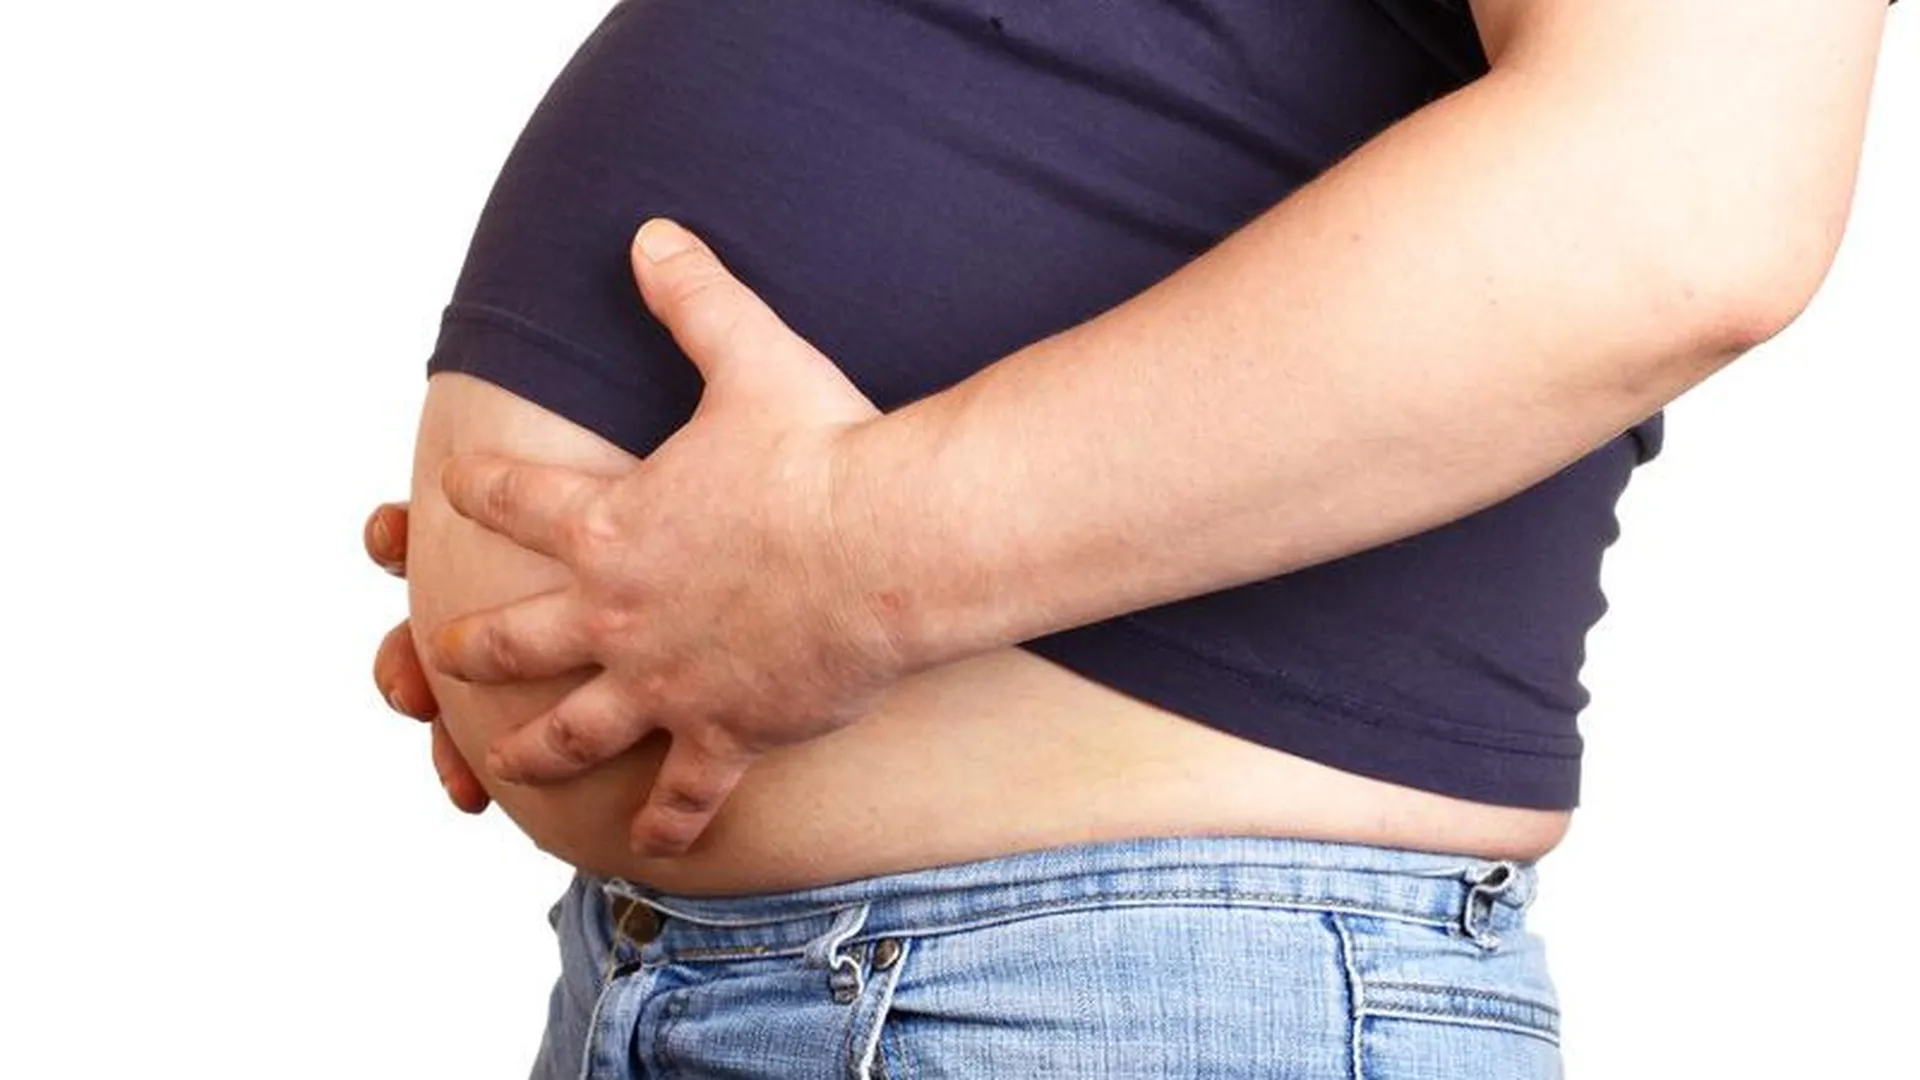 Эндоскопические операции по резекции желудка при ожирении станут в МО бесплатными